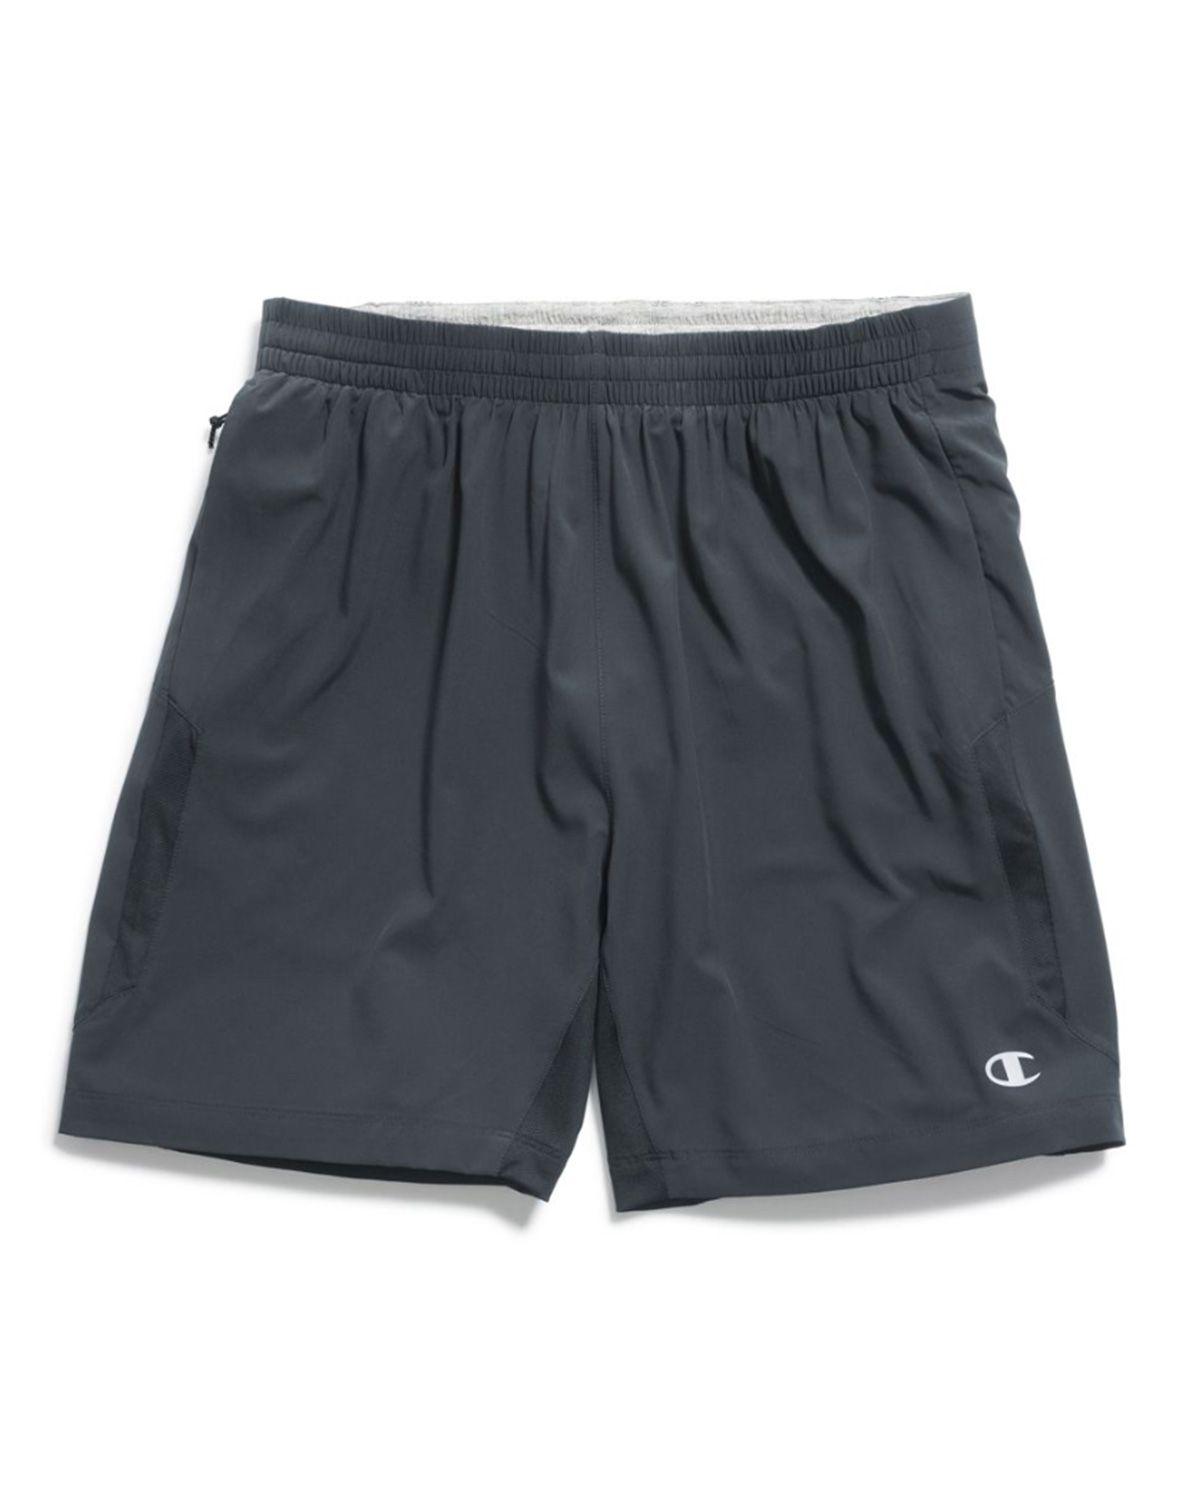 7 inch running shorts